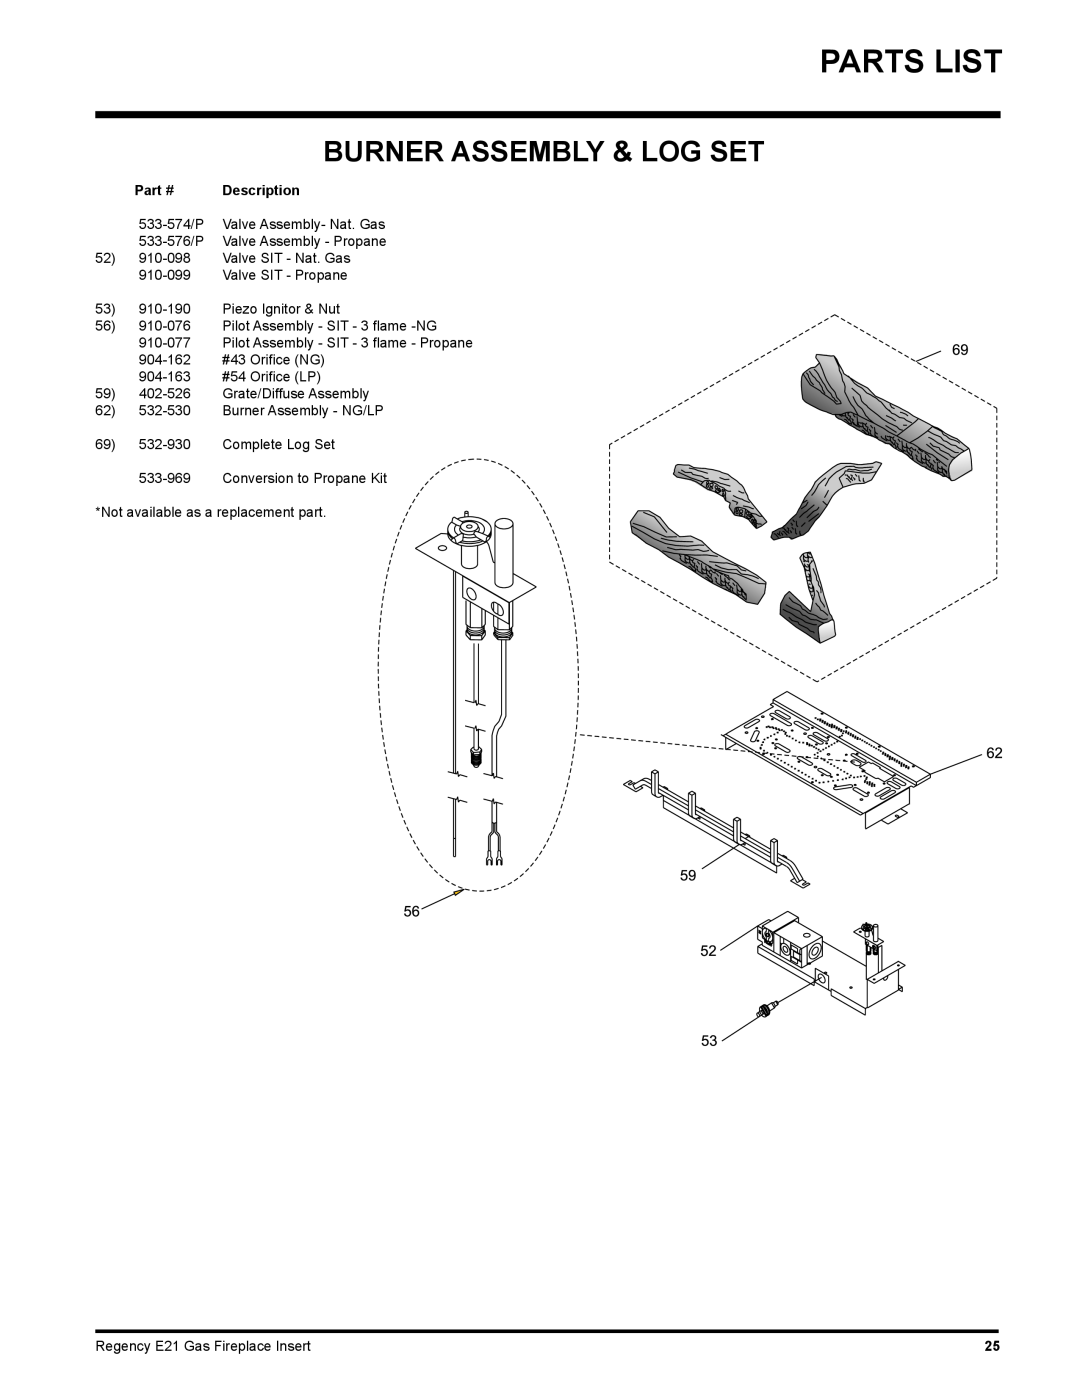 Regency E21-NG1, E21-LP1 installation manual Parts List, Burner Assembly & Log Set 